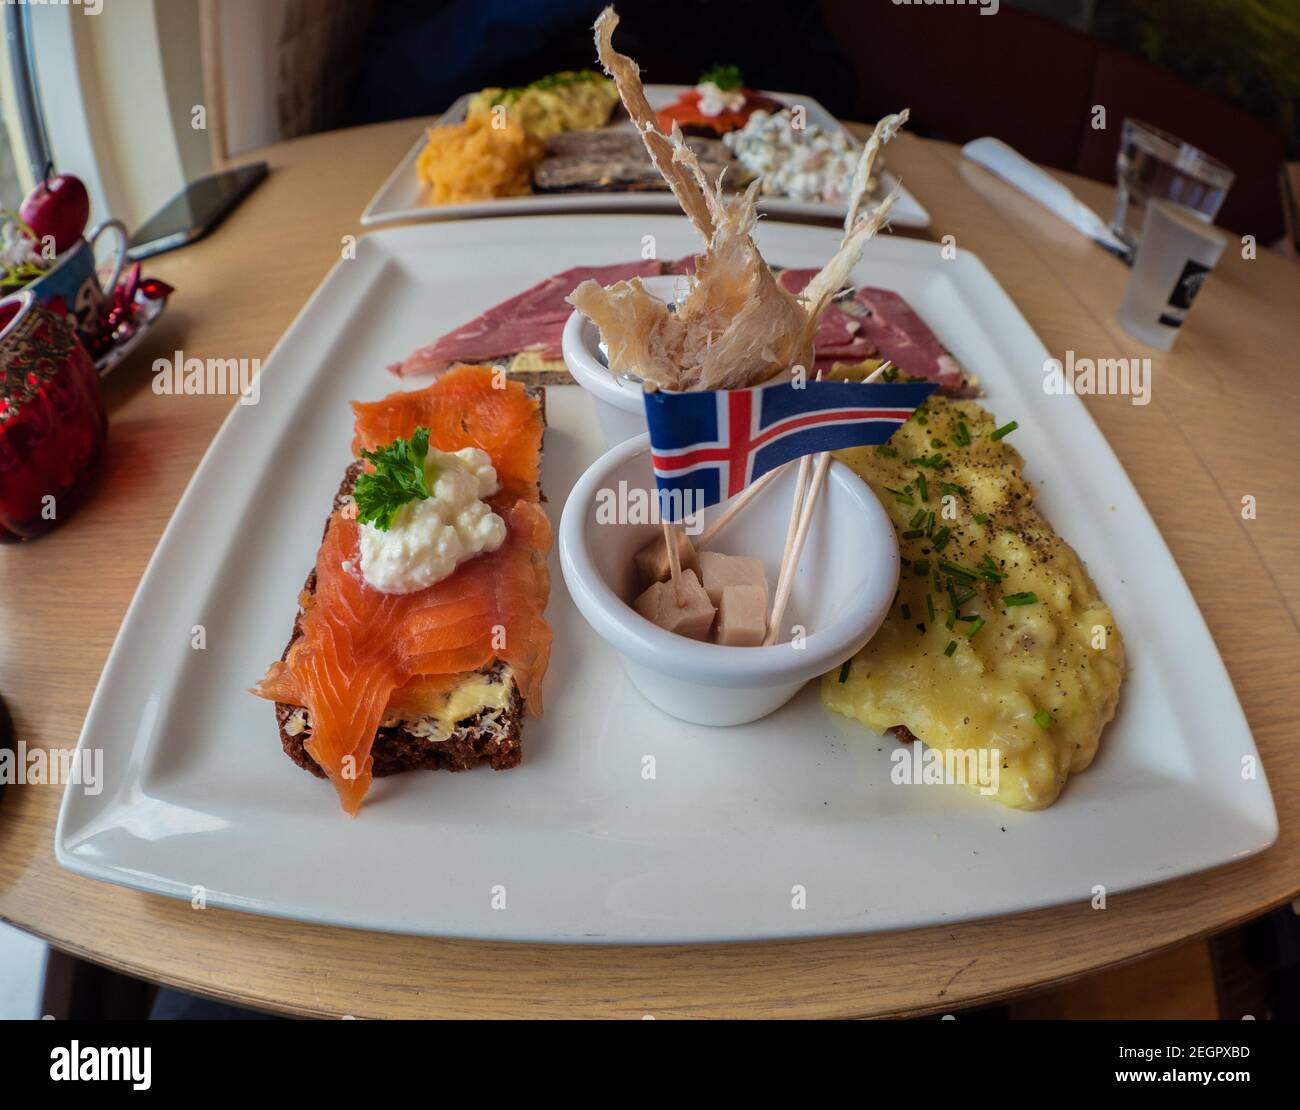 Piatto di degustazione islandese con squalo fermentato, pesce secco, trota affumicata e agnello, con bandiera islandese in cima Foto Stock